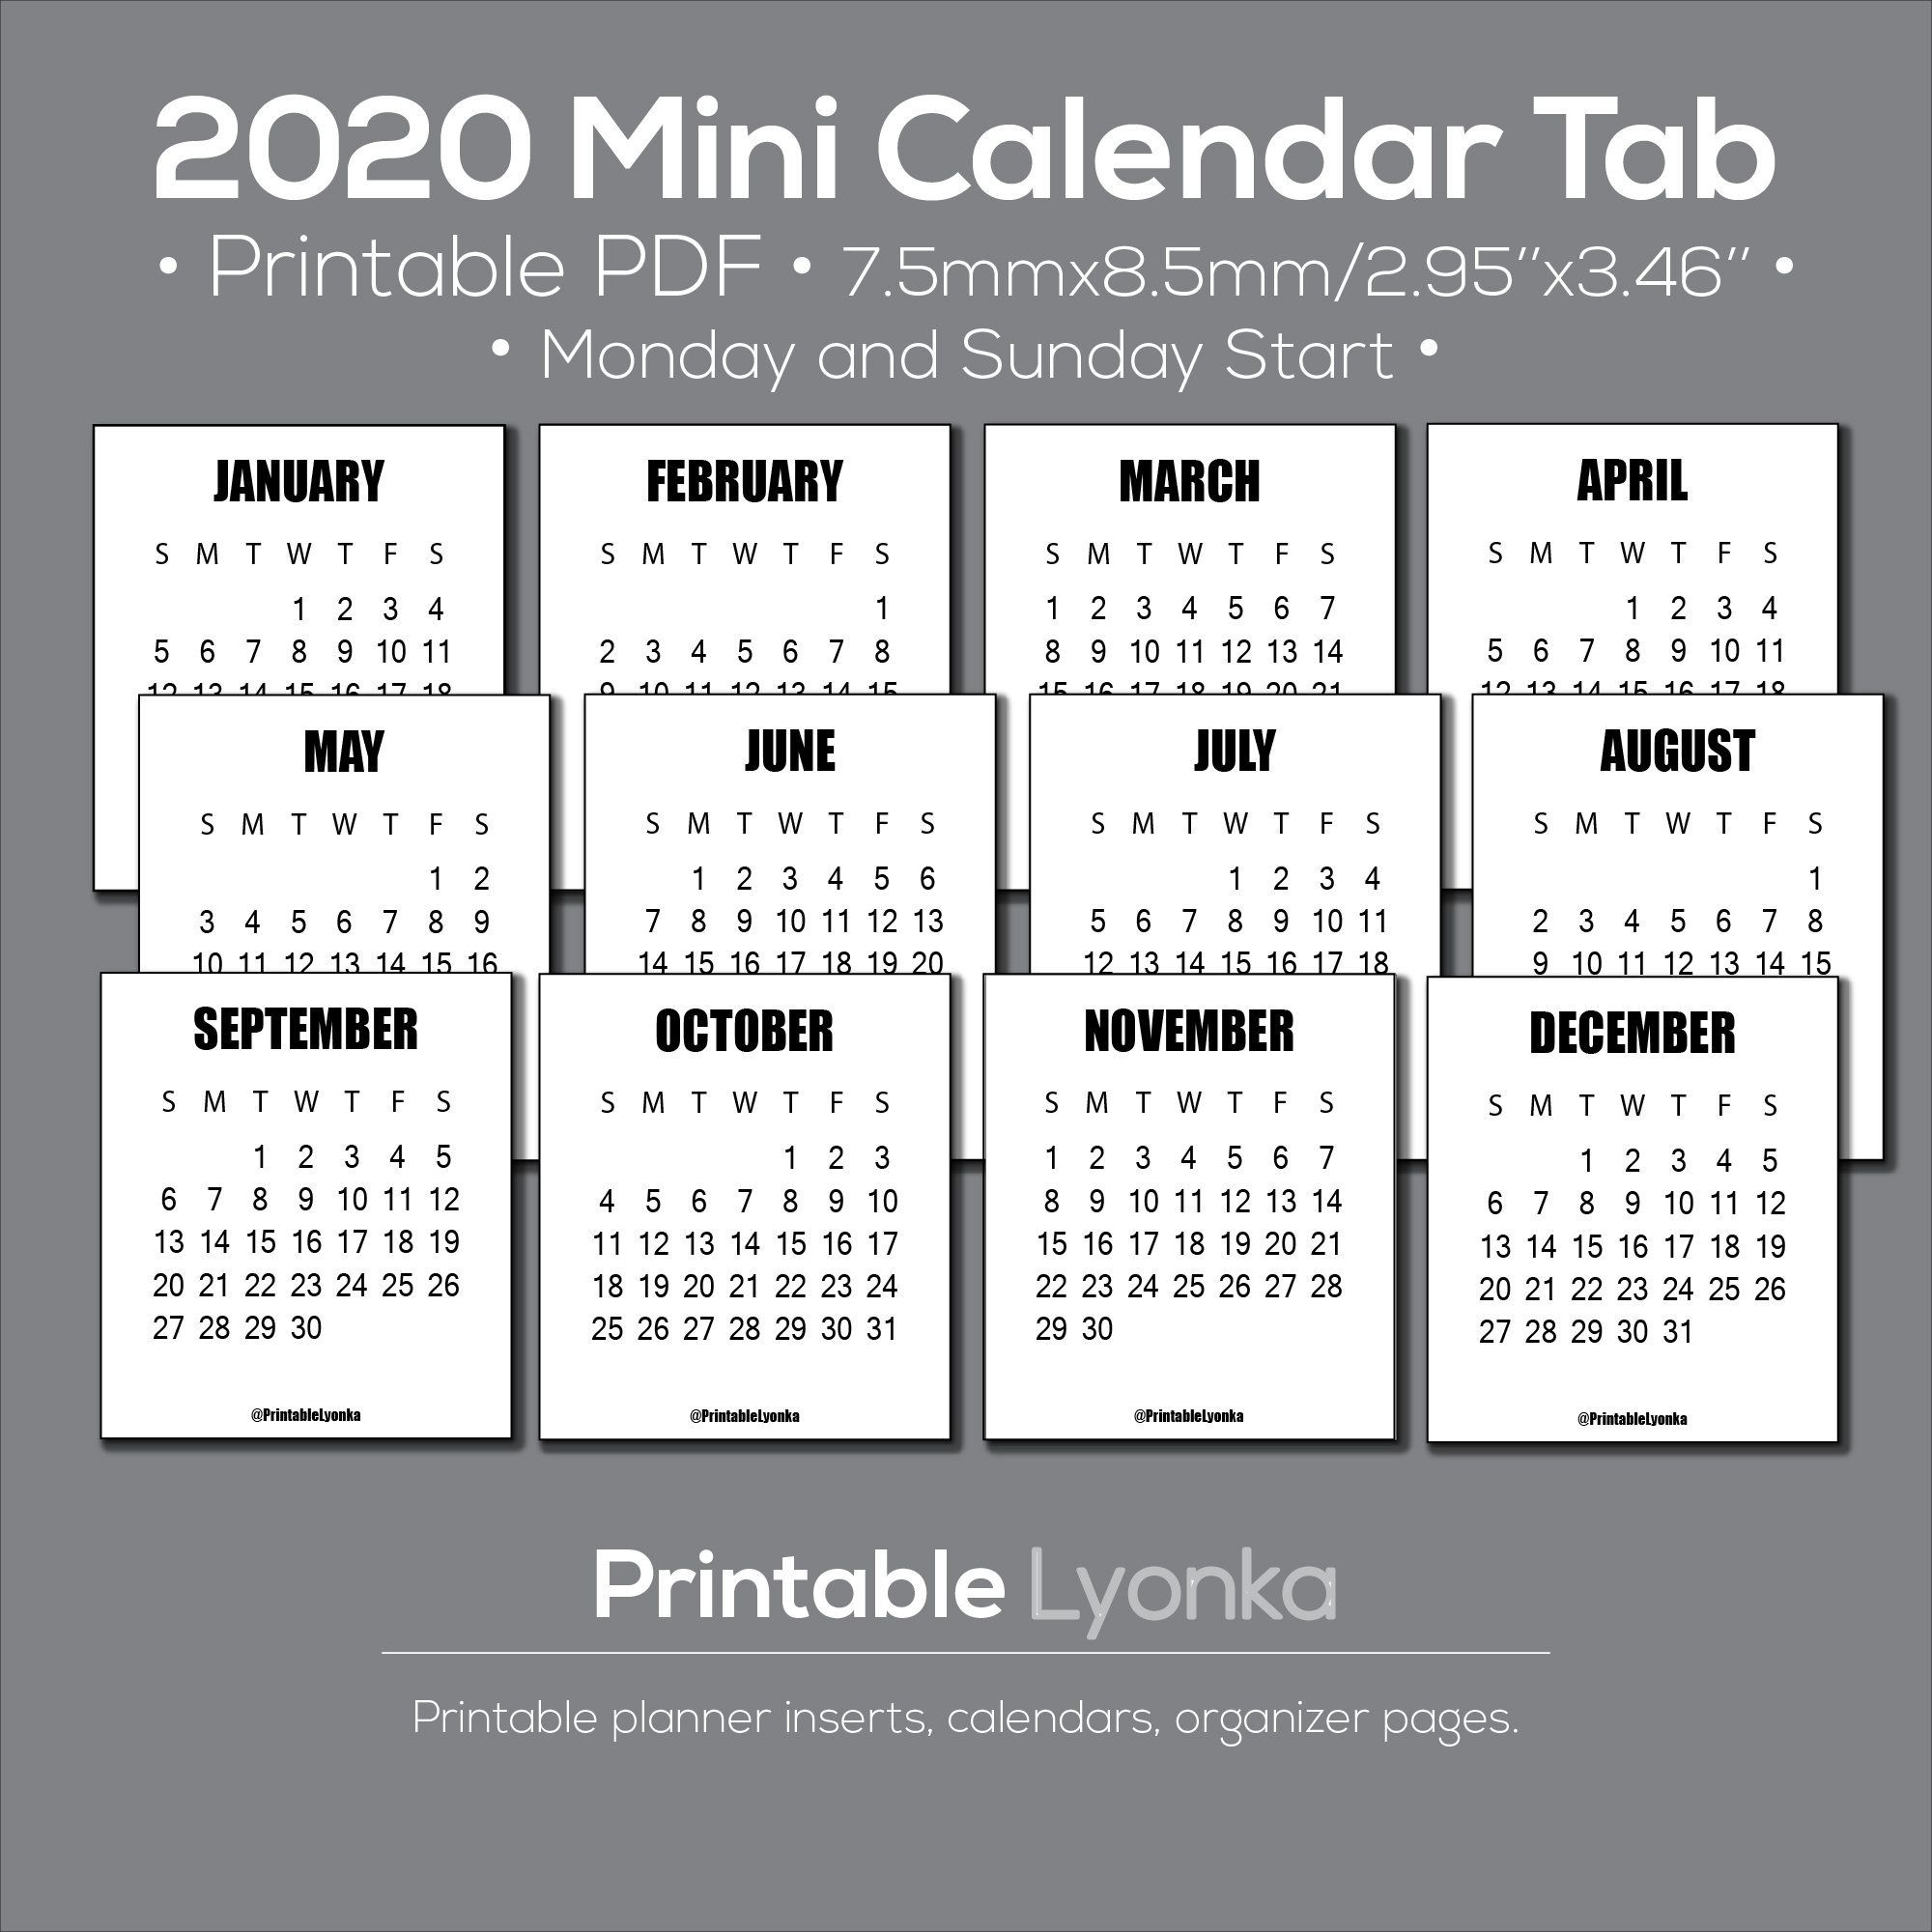 Get Printable Pocket Calendars Online